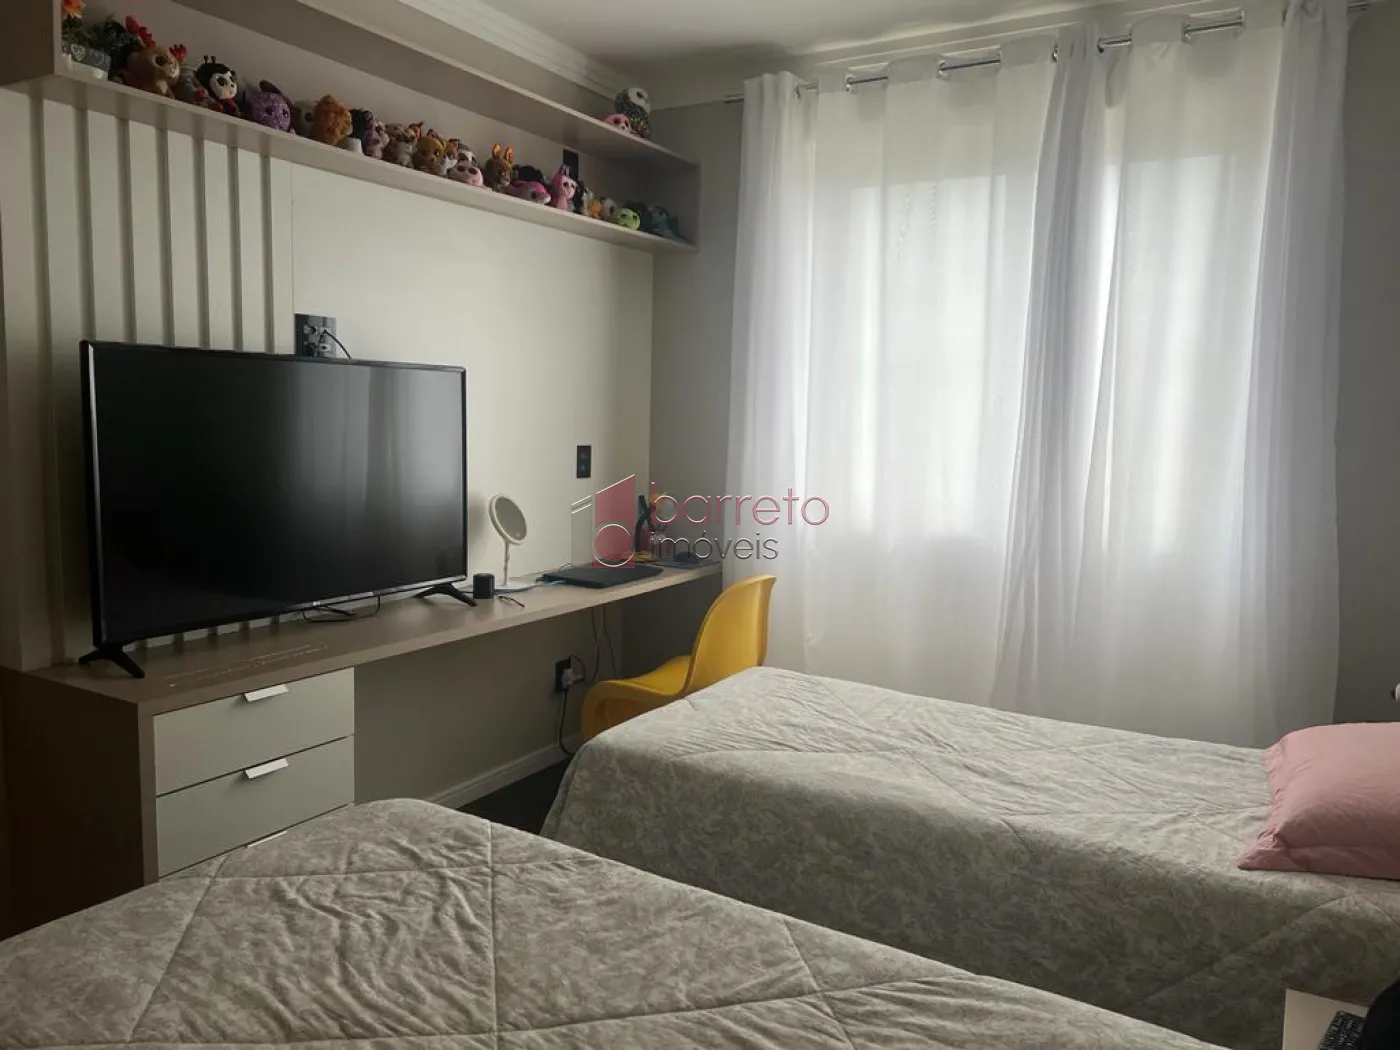 Comprar Apartamento / Padrão em Jundiaí R$ 750.000,00 - Foto 15